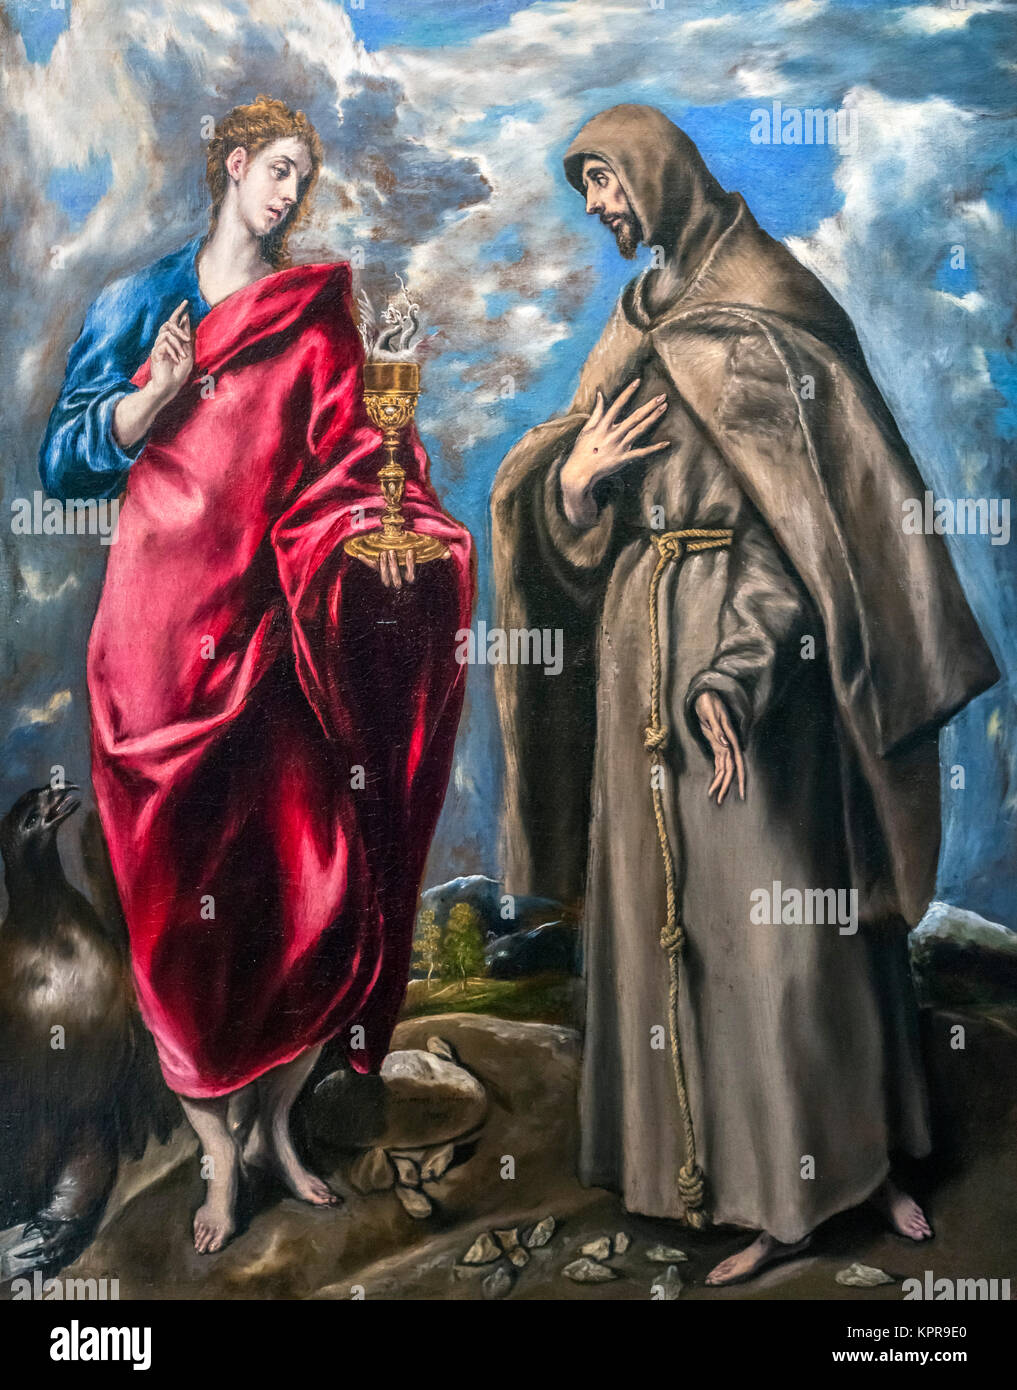 Der Evangelist Johannes und der Hl. Franziskus von El Greco (Domenikos Theotokopoulos, 1541-1614), Öl auf Leinwand, c1600. Stockfoto